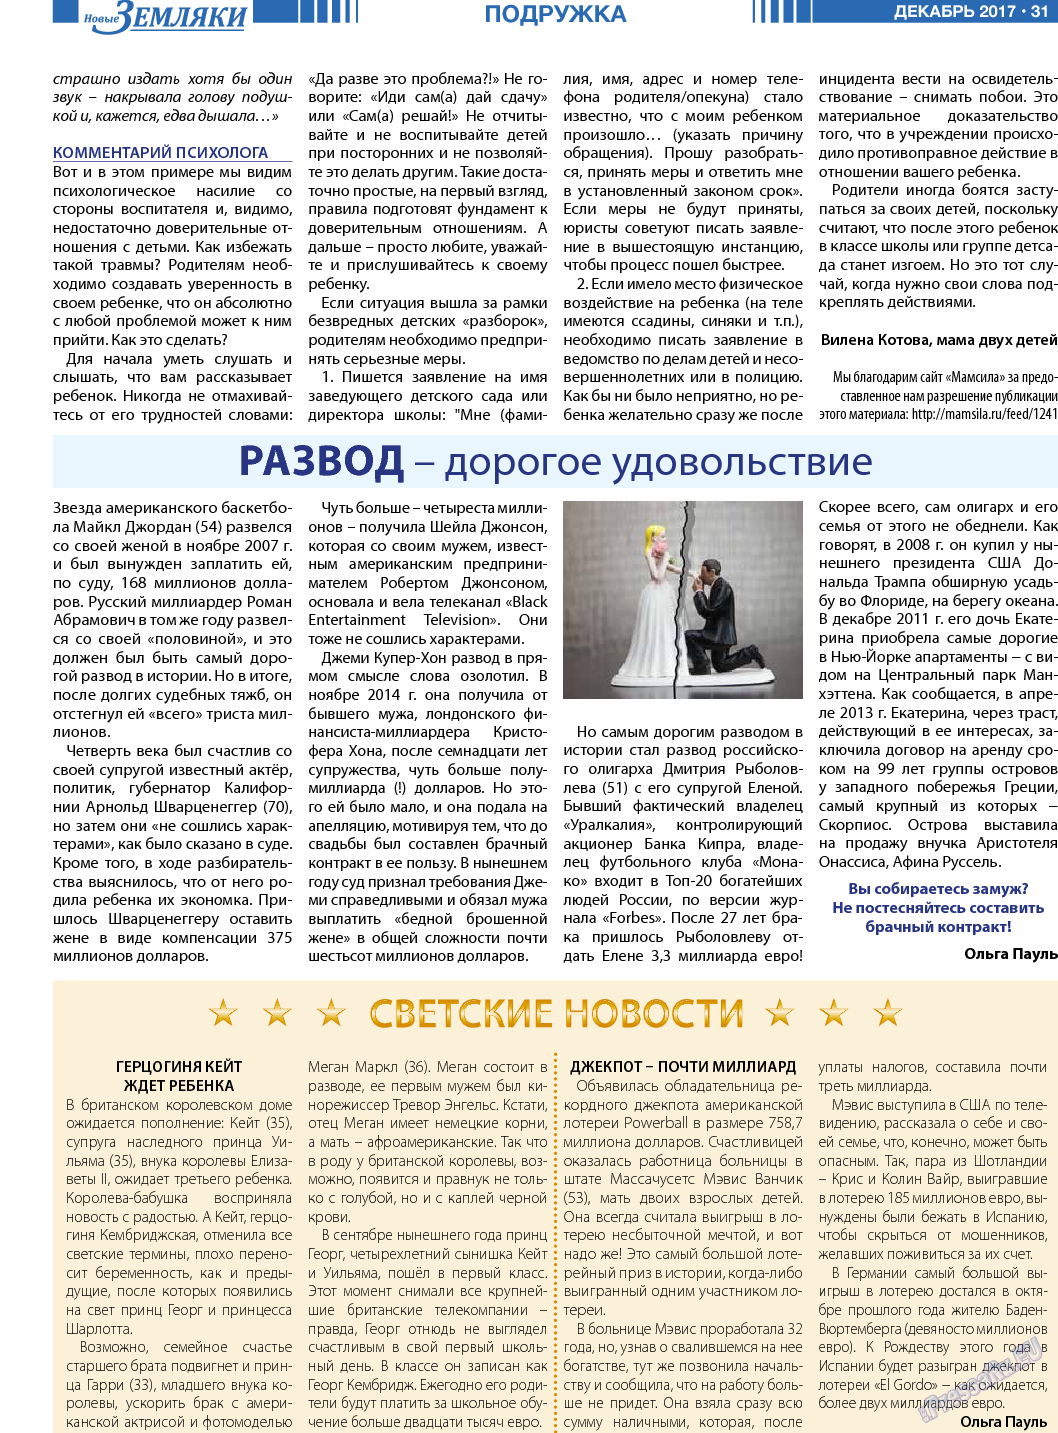 Новые Земляки, газета. 2017 №12 стр.31